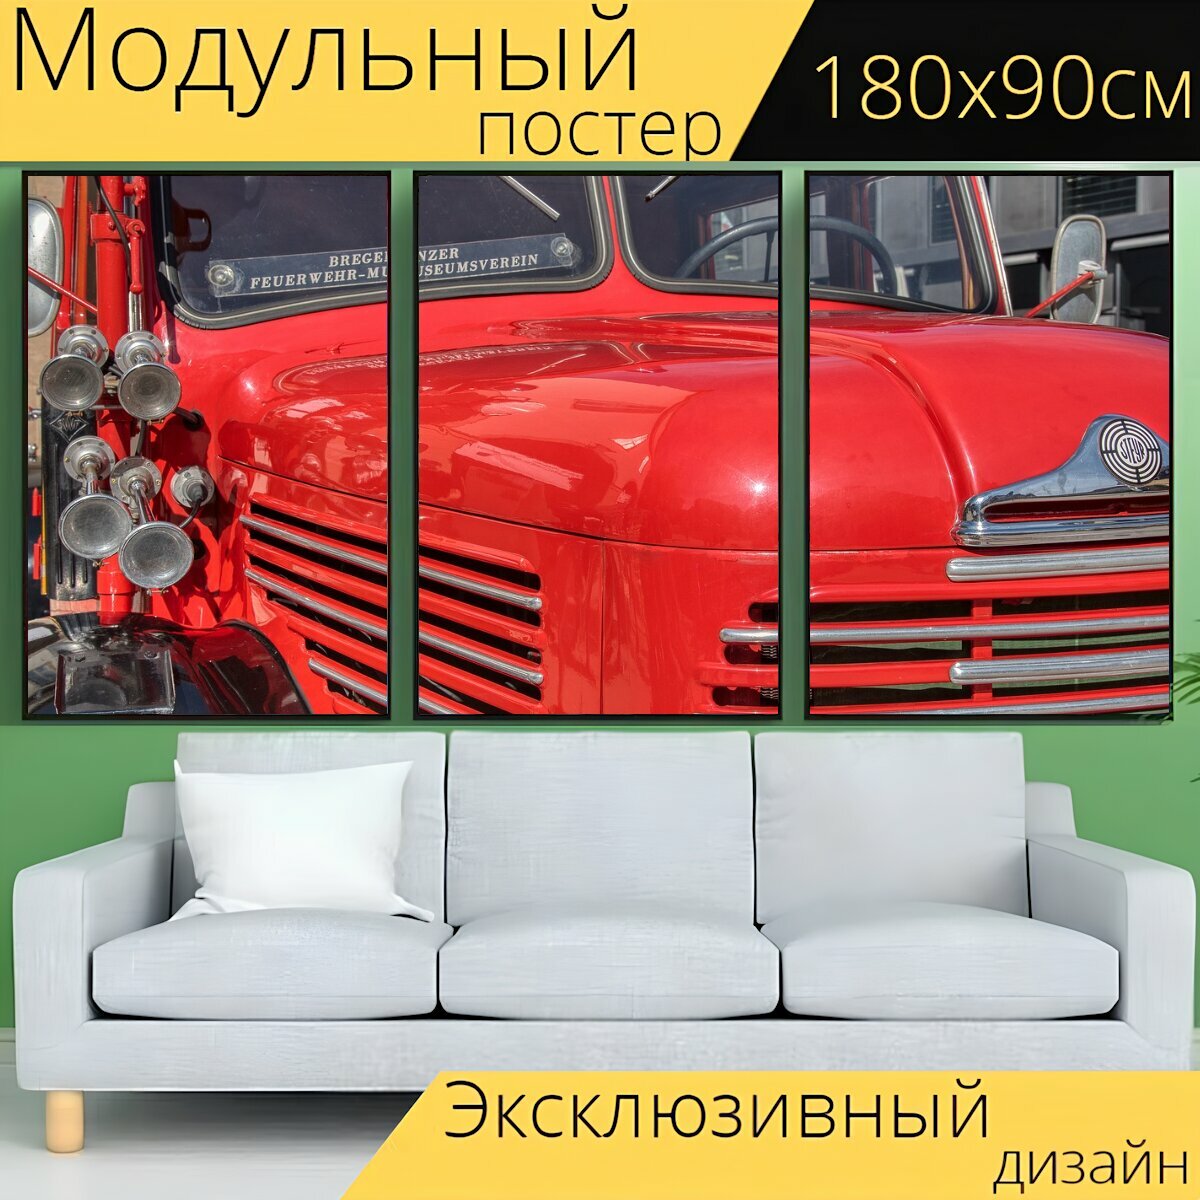 Модульный постер "Автомобиль, транспортное средство, старинный автомобиль" 180 x 90 см. для интерьера